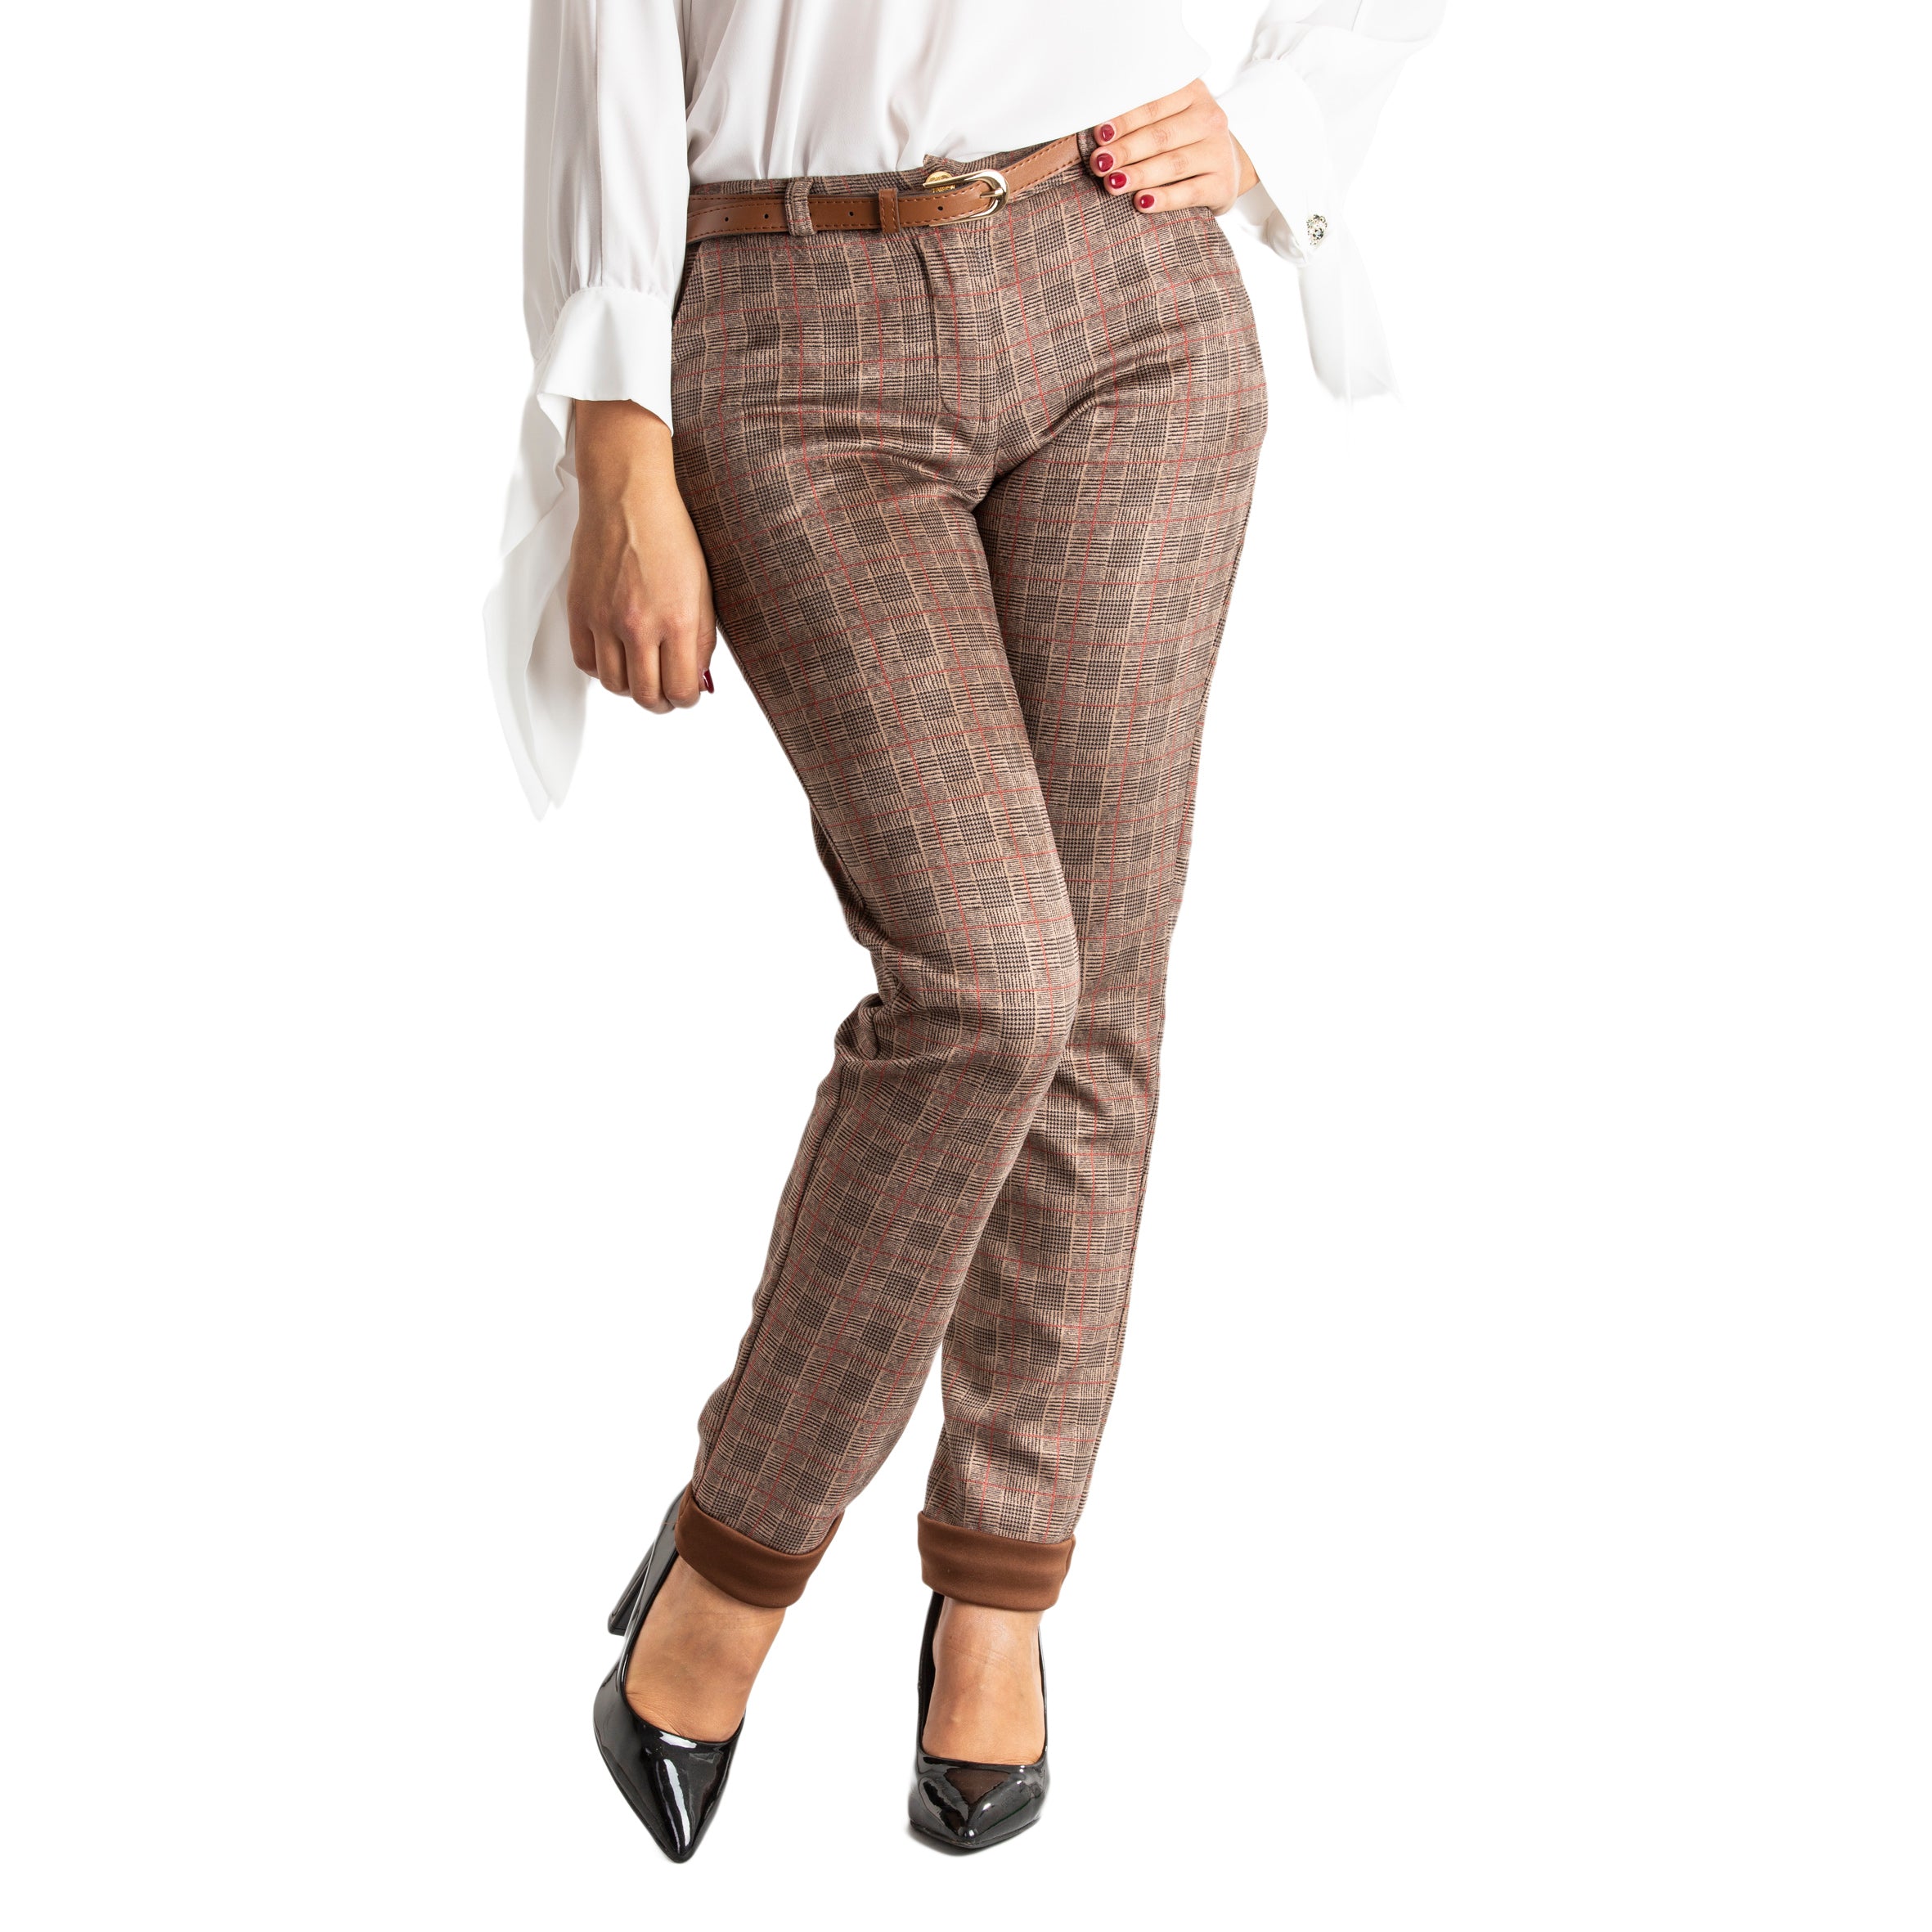 Pantalone donna slim fit con tasche e cintura casual made in italy 1436